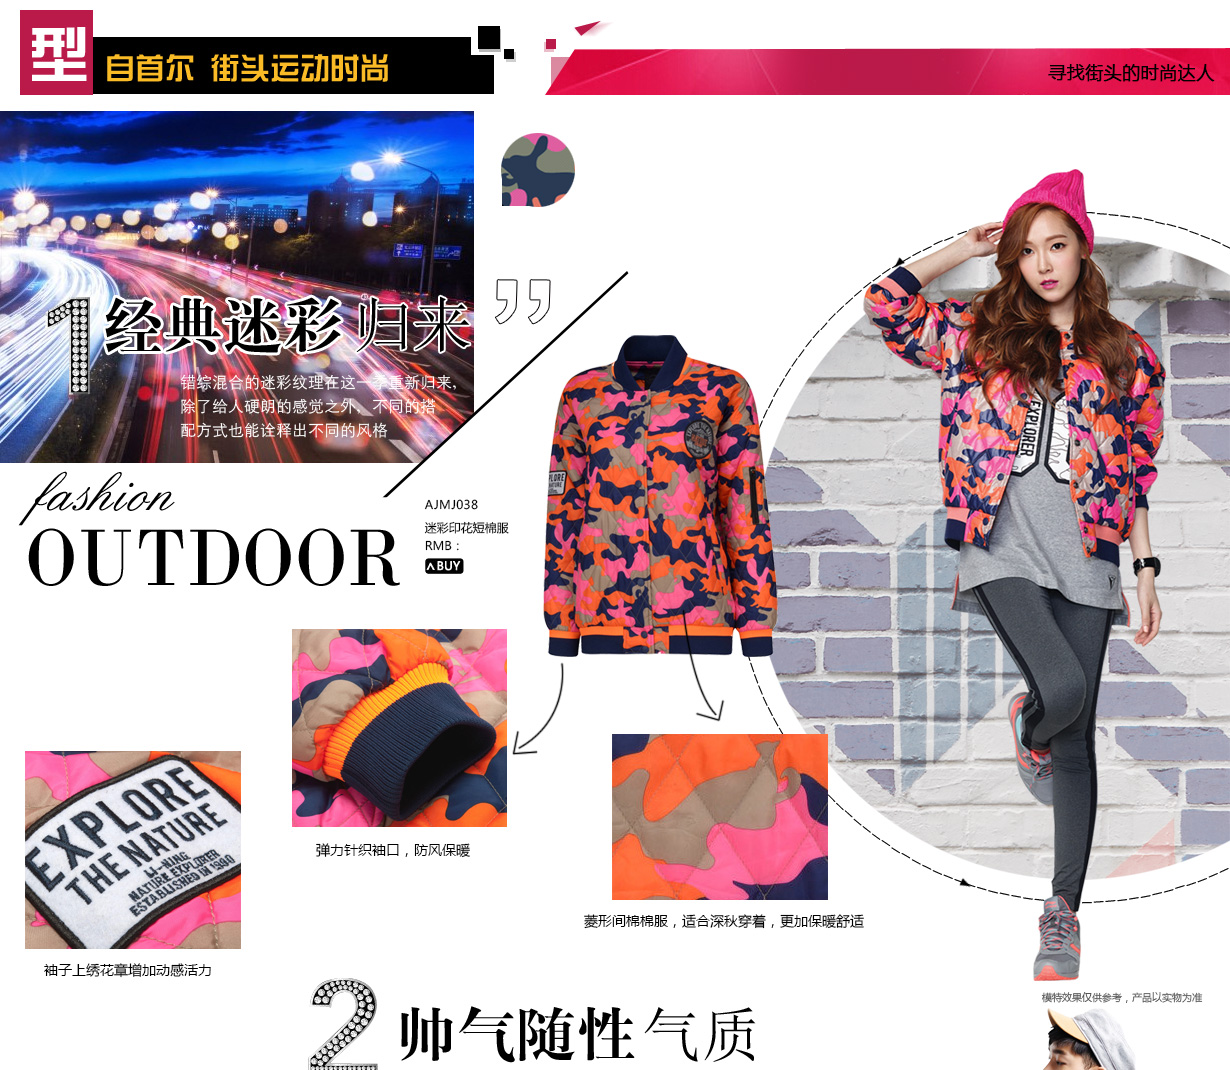 [OTHER][28-06-2014]Jessica trở thành người mẫu mới cho thương hiệu thời trang thể thao Li Ning 15280329671_d2c108bcf4_o